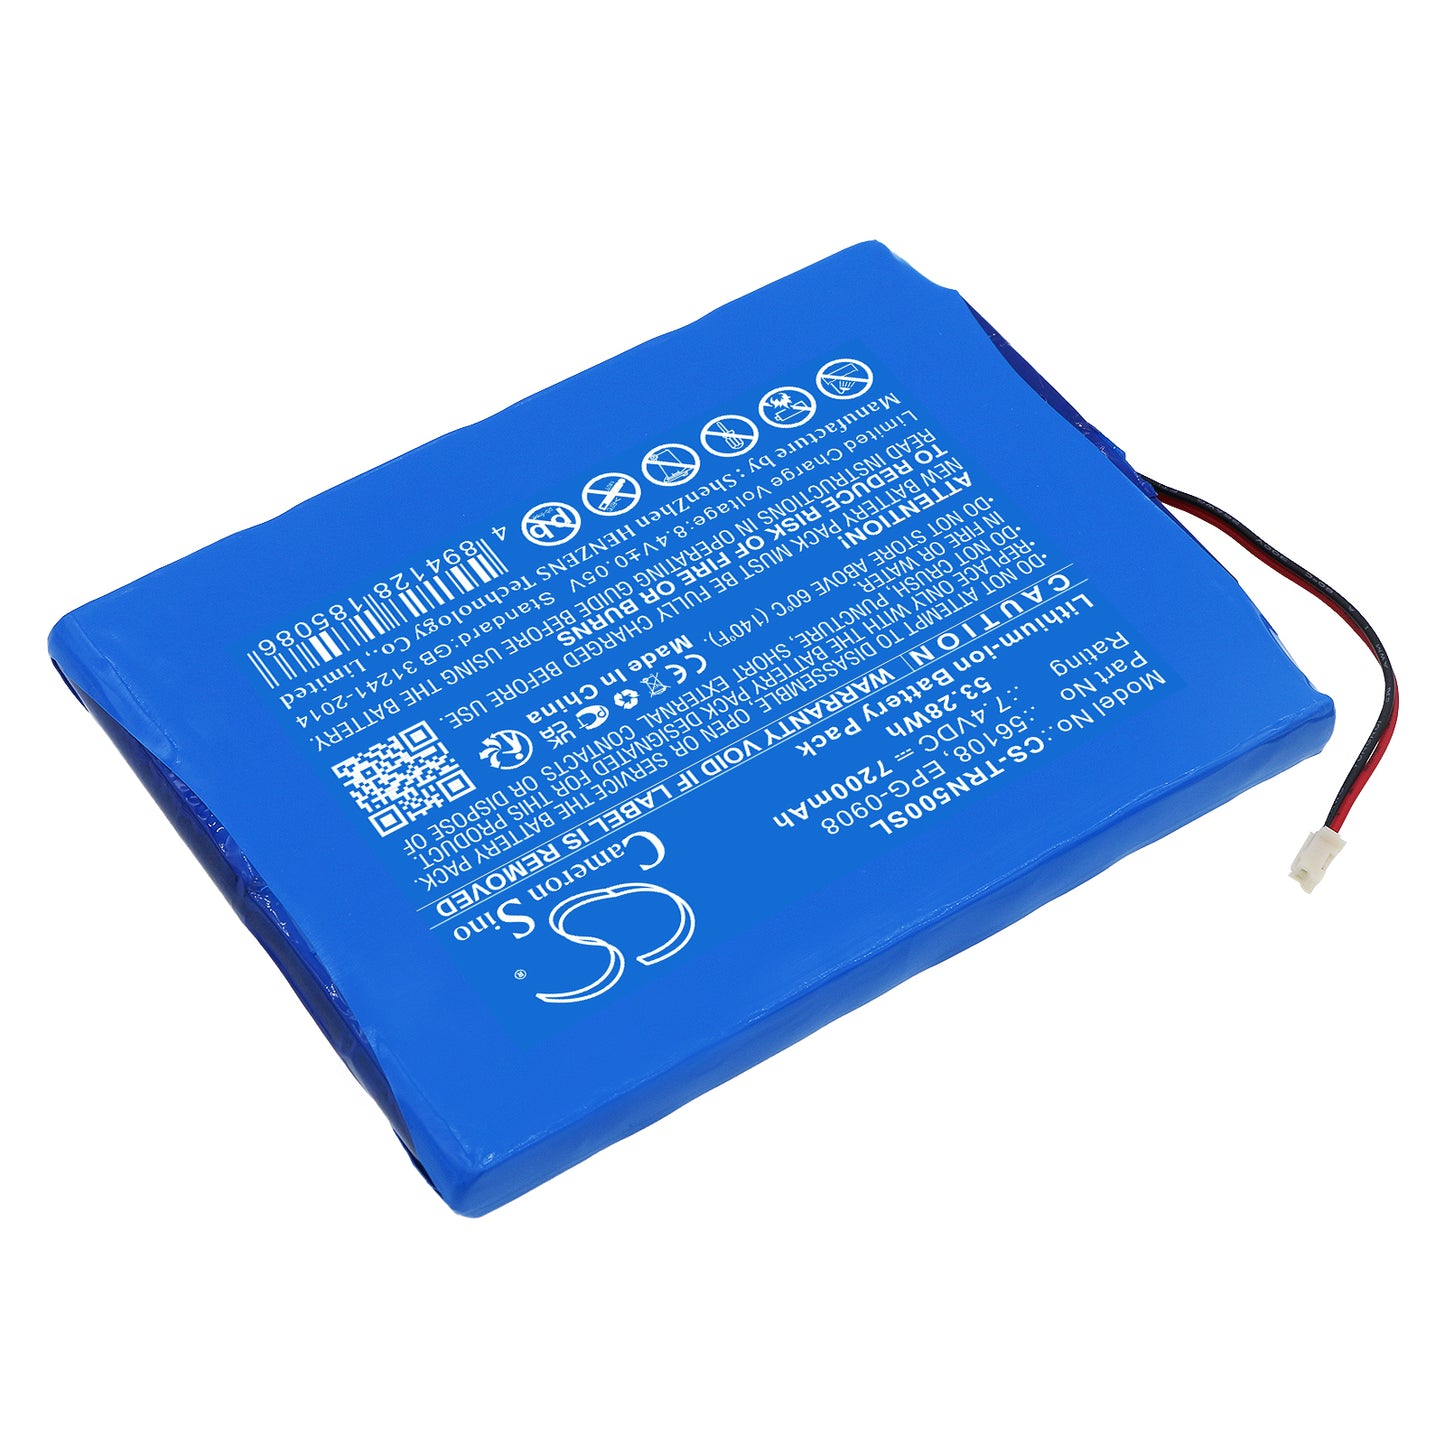 7200mAh 56108, EPG-0908 Battery for Trimble GPS Net R5, 67668-20, GPS Net R9-SMAVtronics